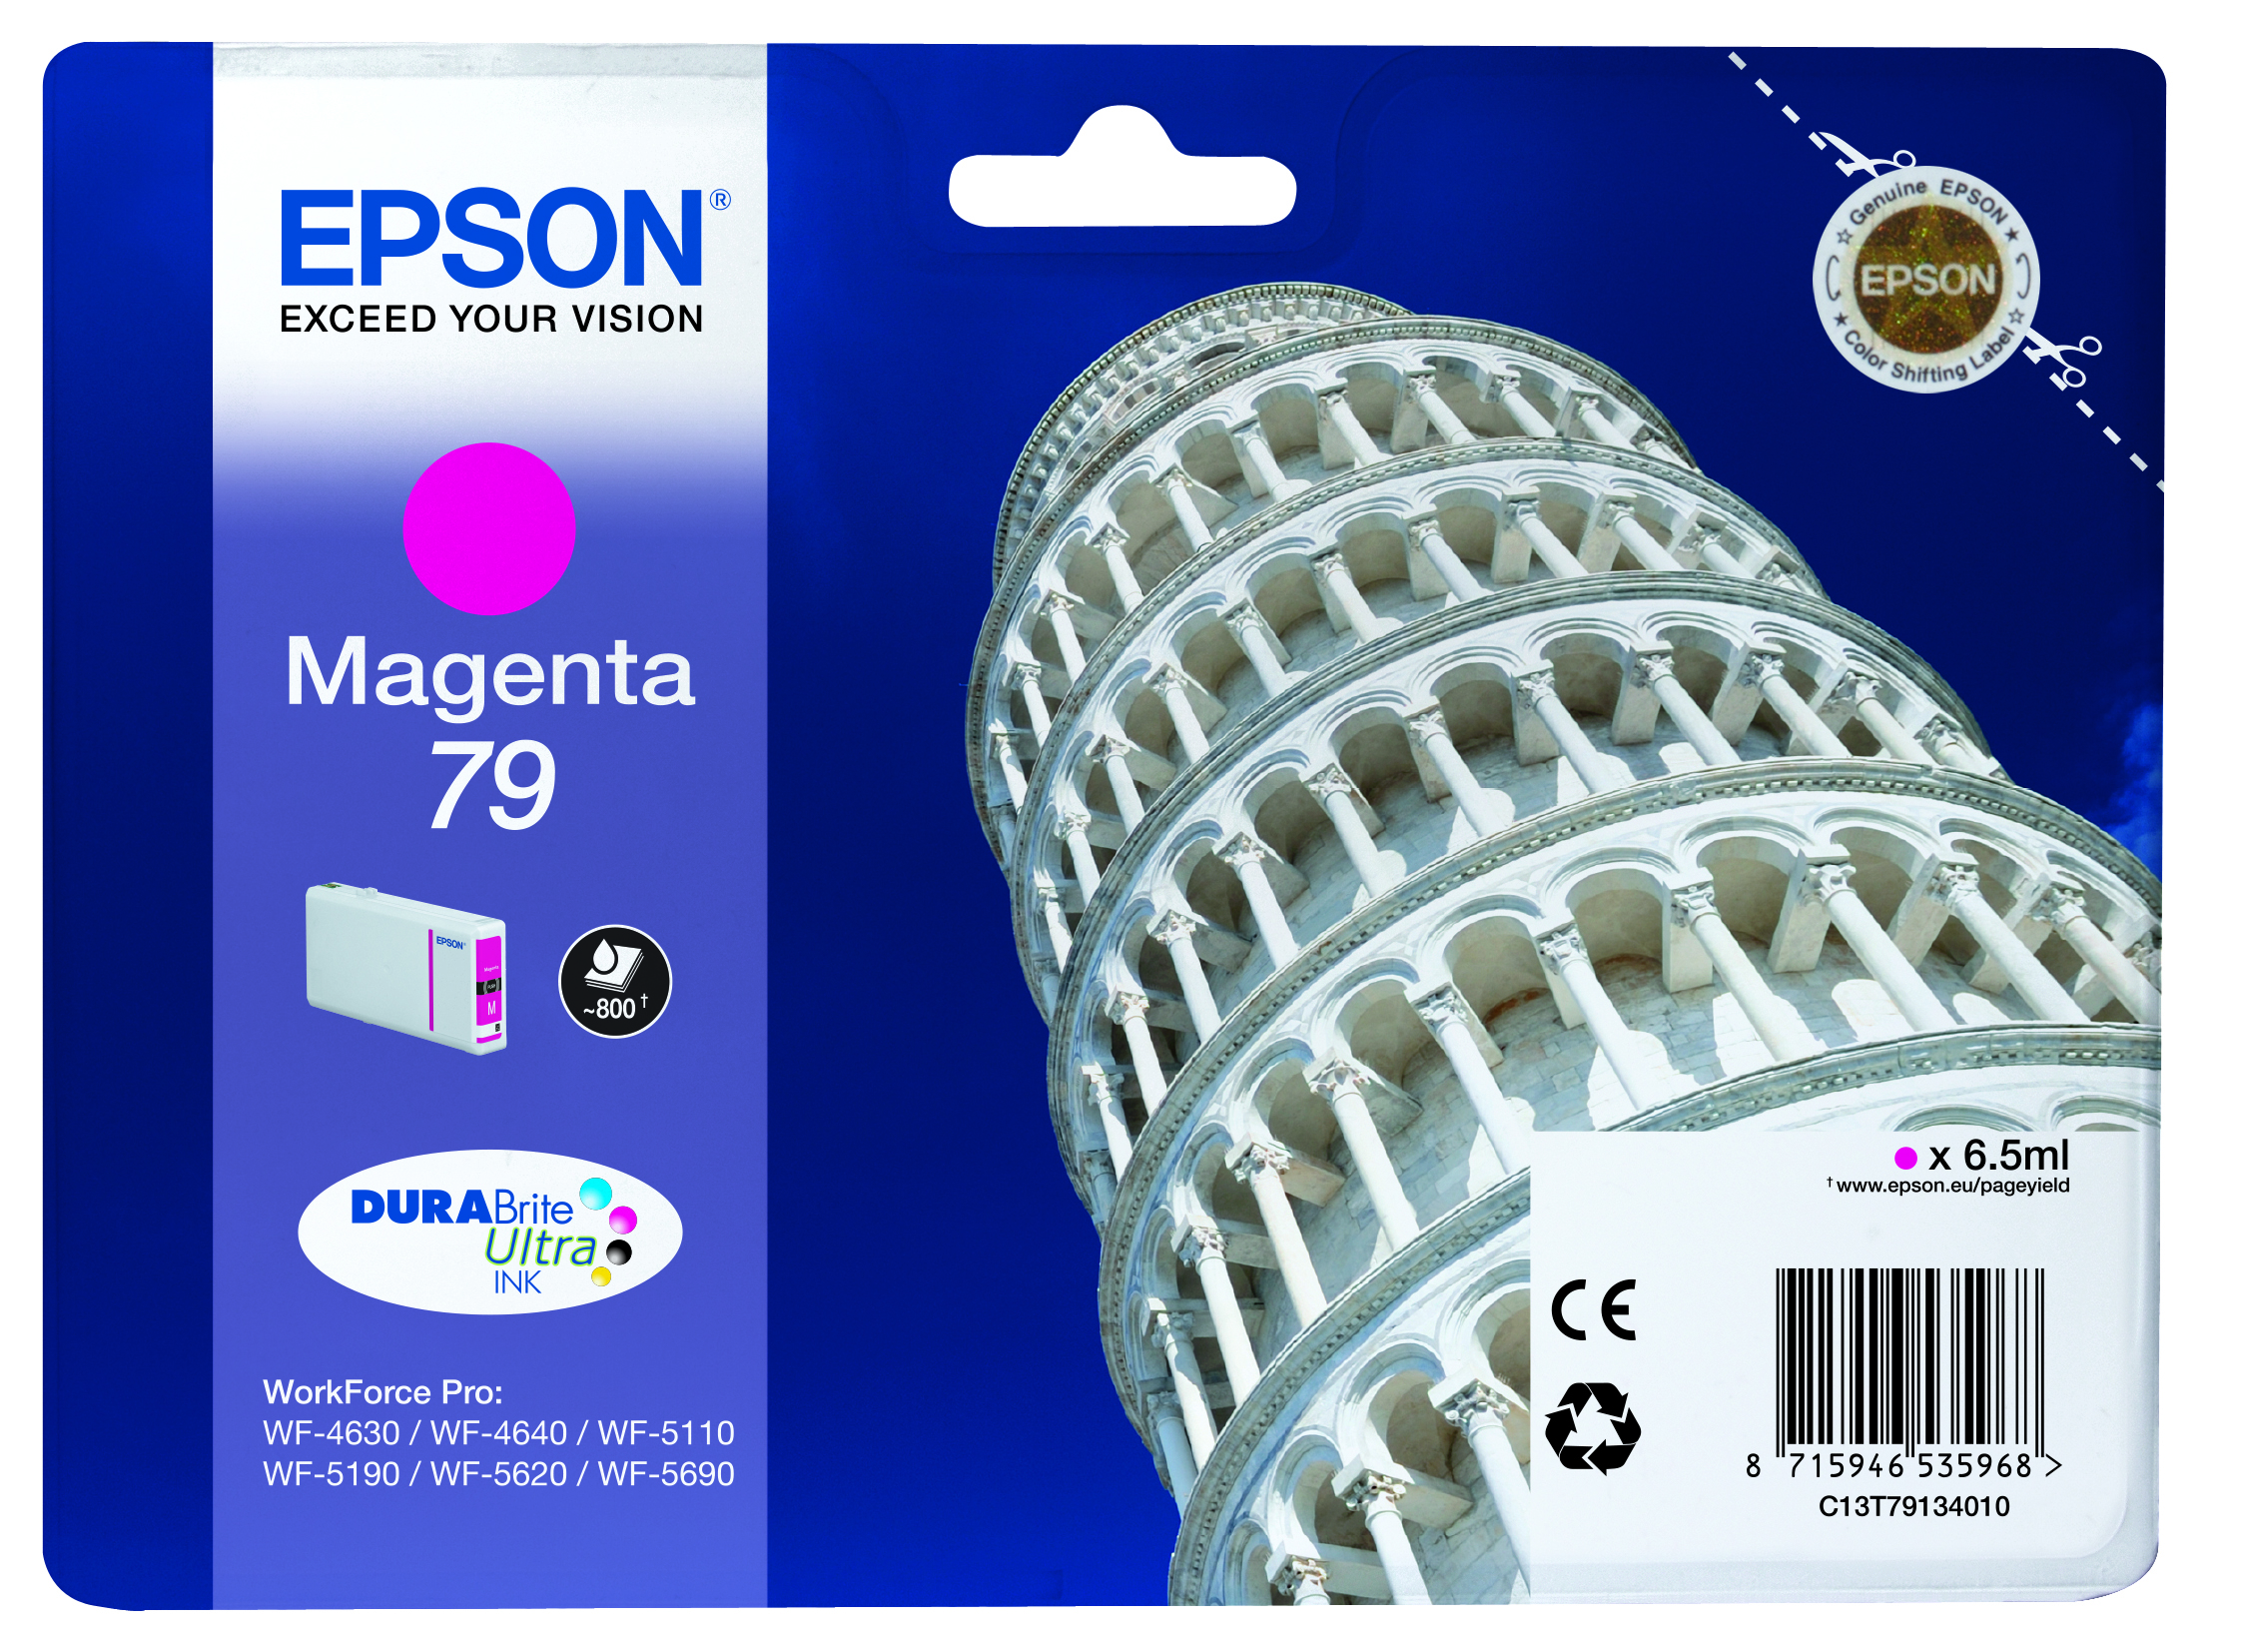 Tanica Inch a Pigmenti Magenta Durabrite Ultra Serie 79 Torre di Pisa Blister C13t79134010 8715946535968